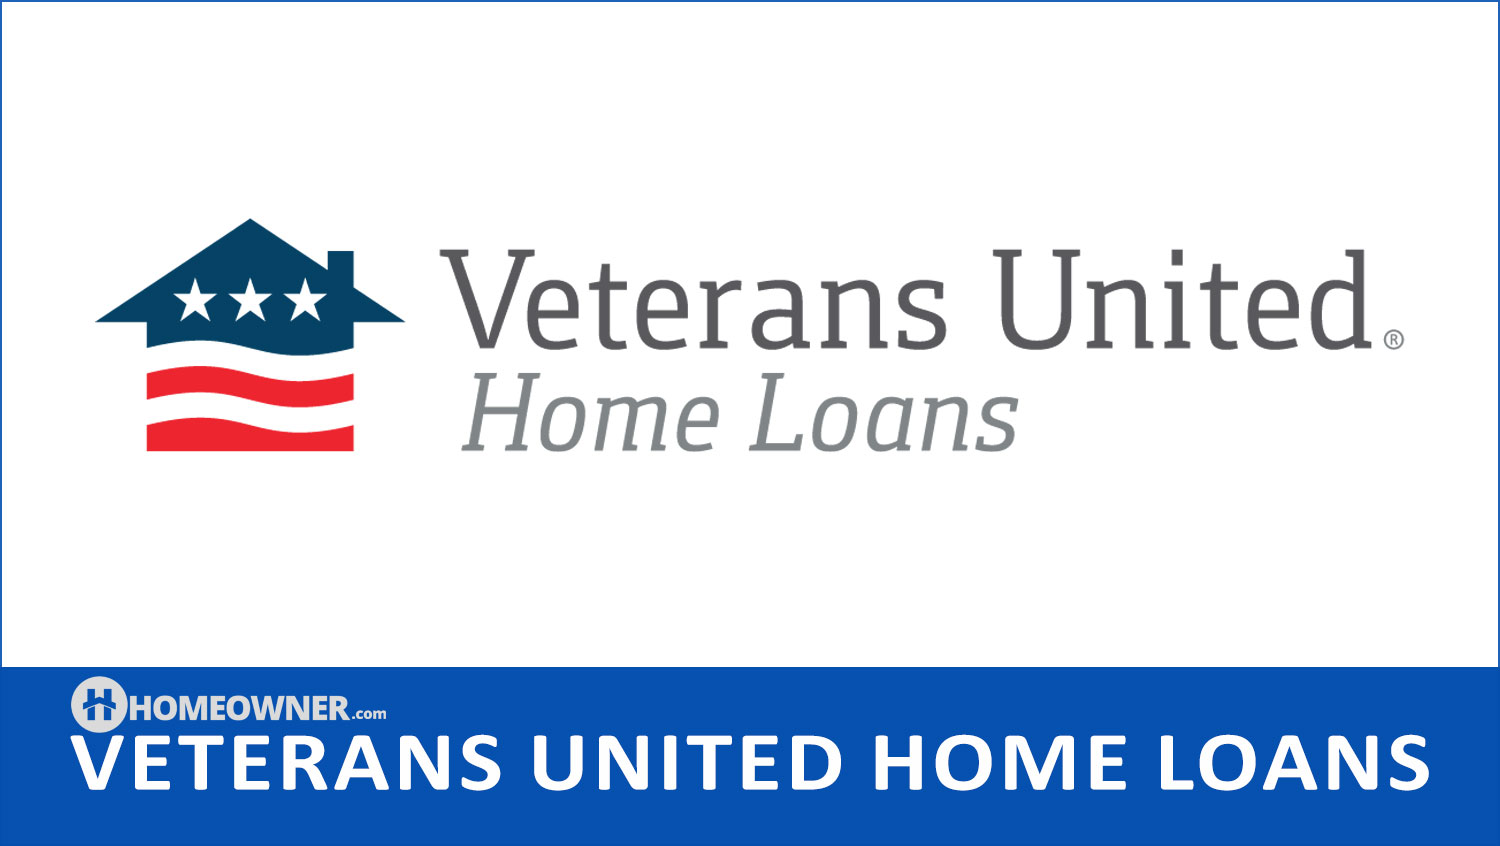 Veterans United Home Loans - 2023 Lender Review